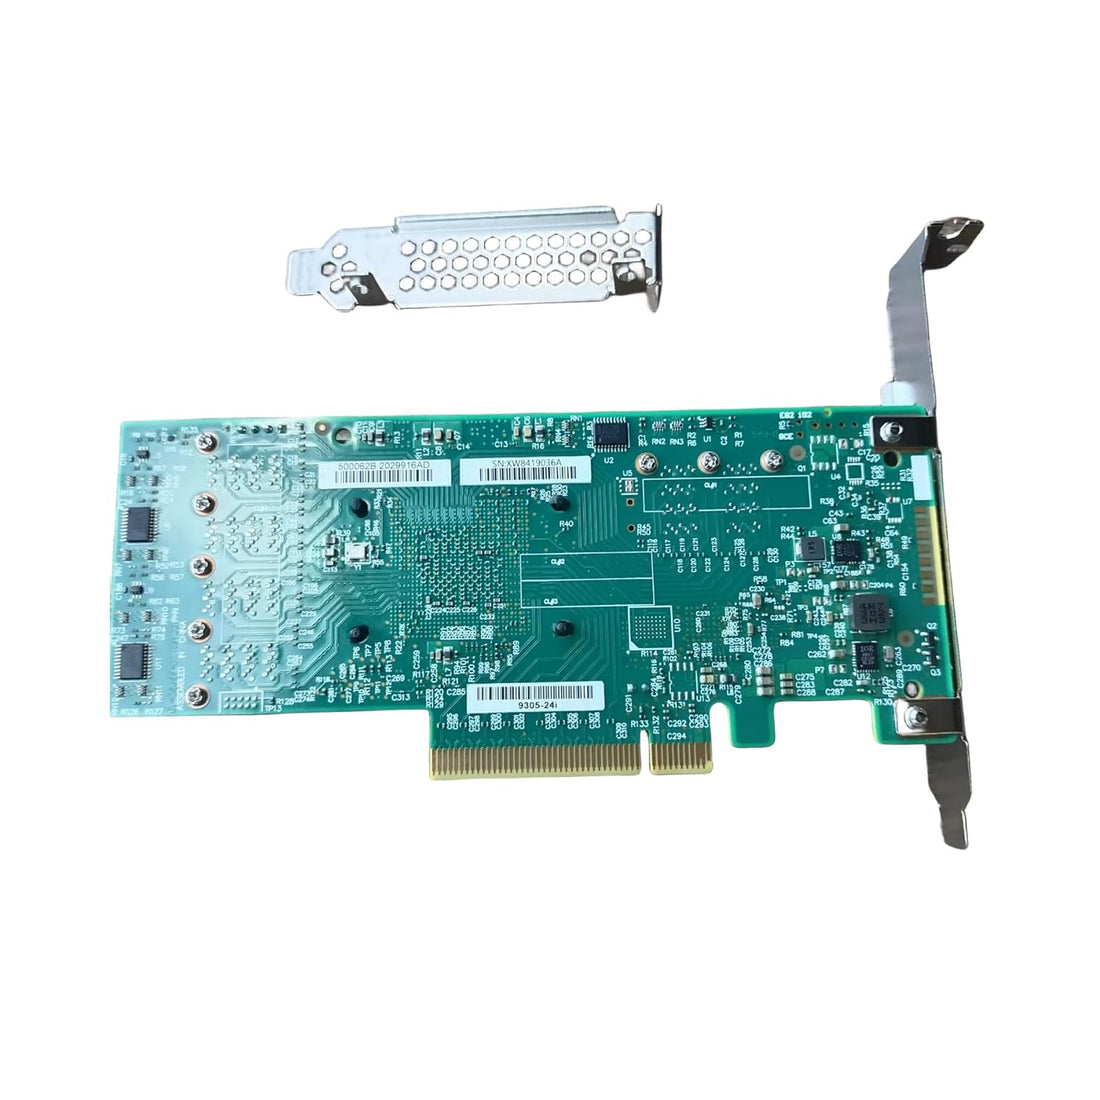 SVNXINGTII SAS9305-24i LSI 9305-24i Logic Controller Card IT Mode 24-Port SAS 12Gb/s pci-e 3.0 HBA SATA SAS (9305-24i Card)